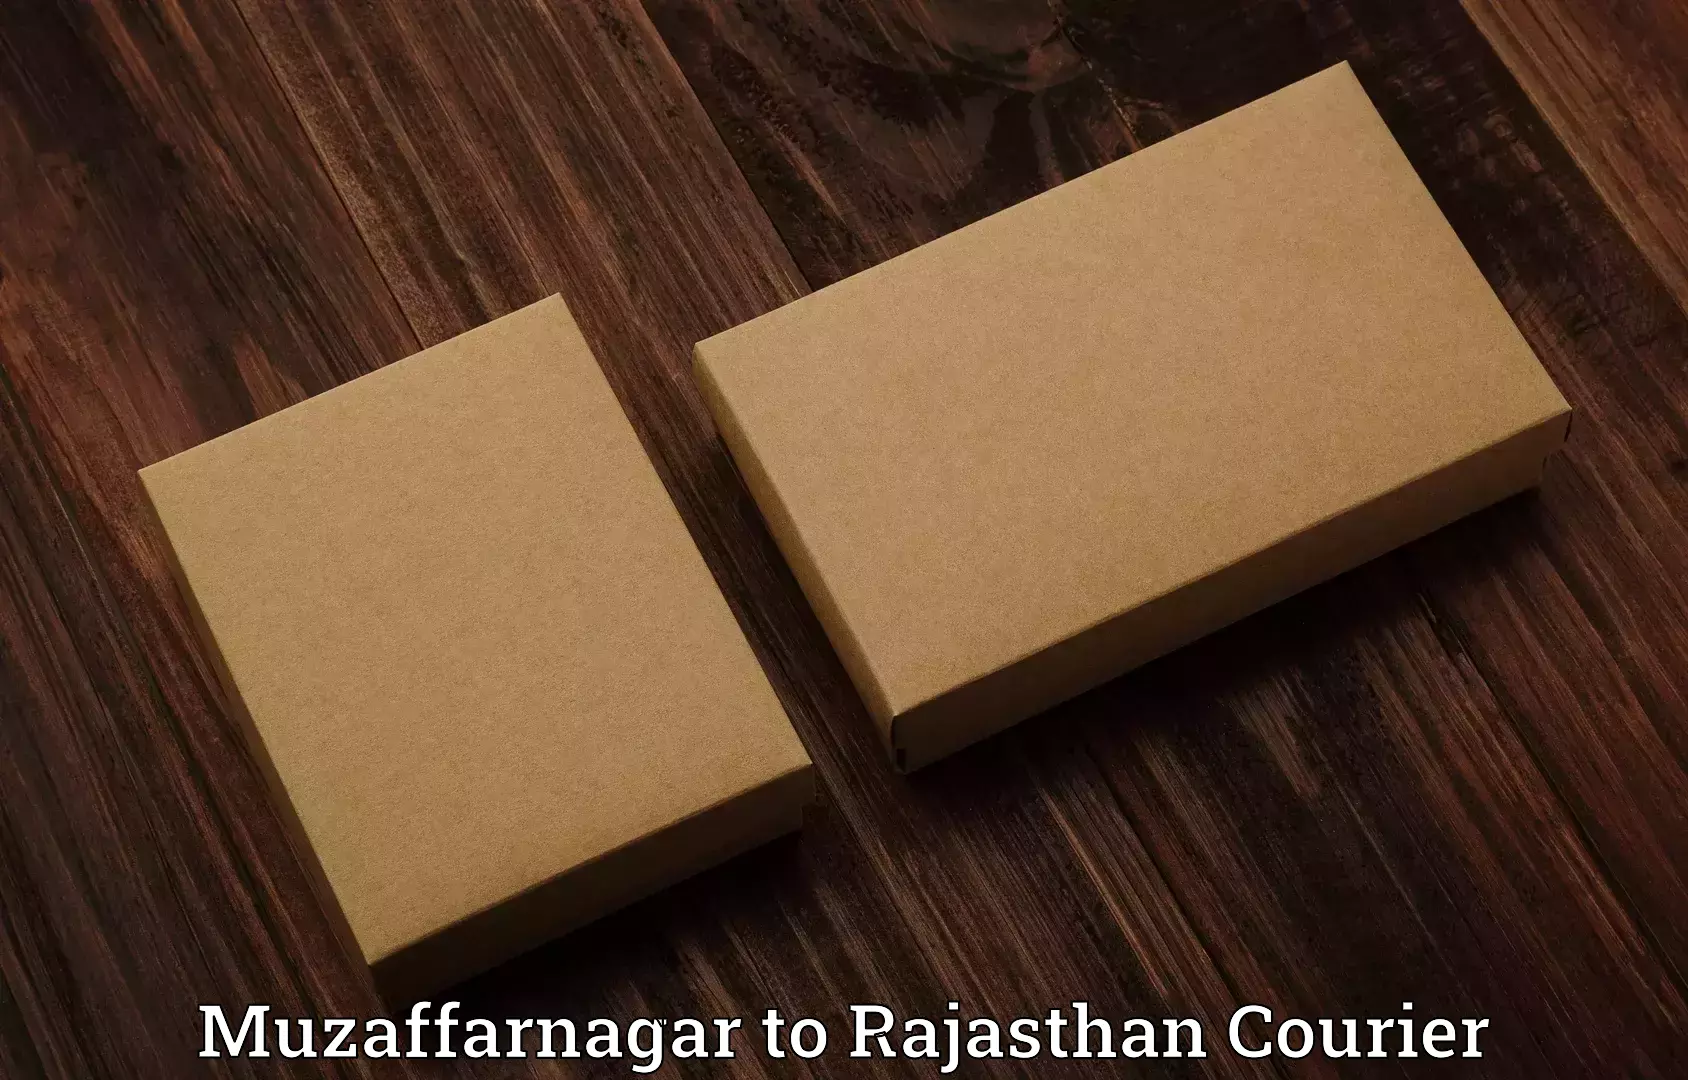 Same day luggage service Muzaffarnagar to Rajasthan